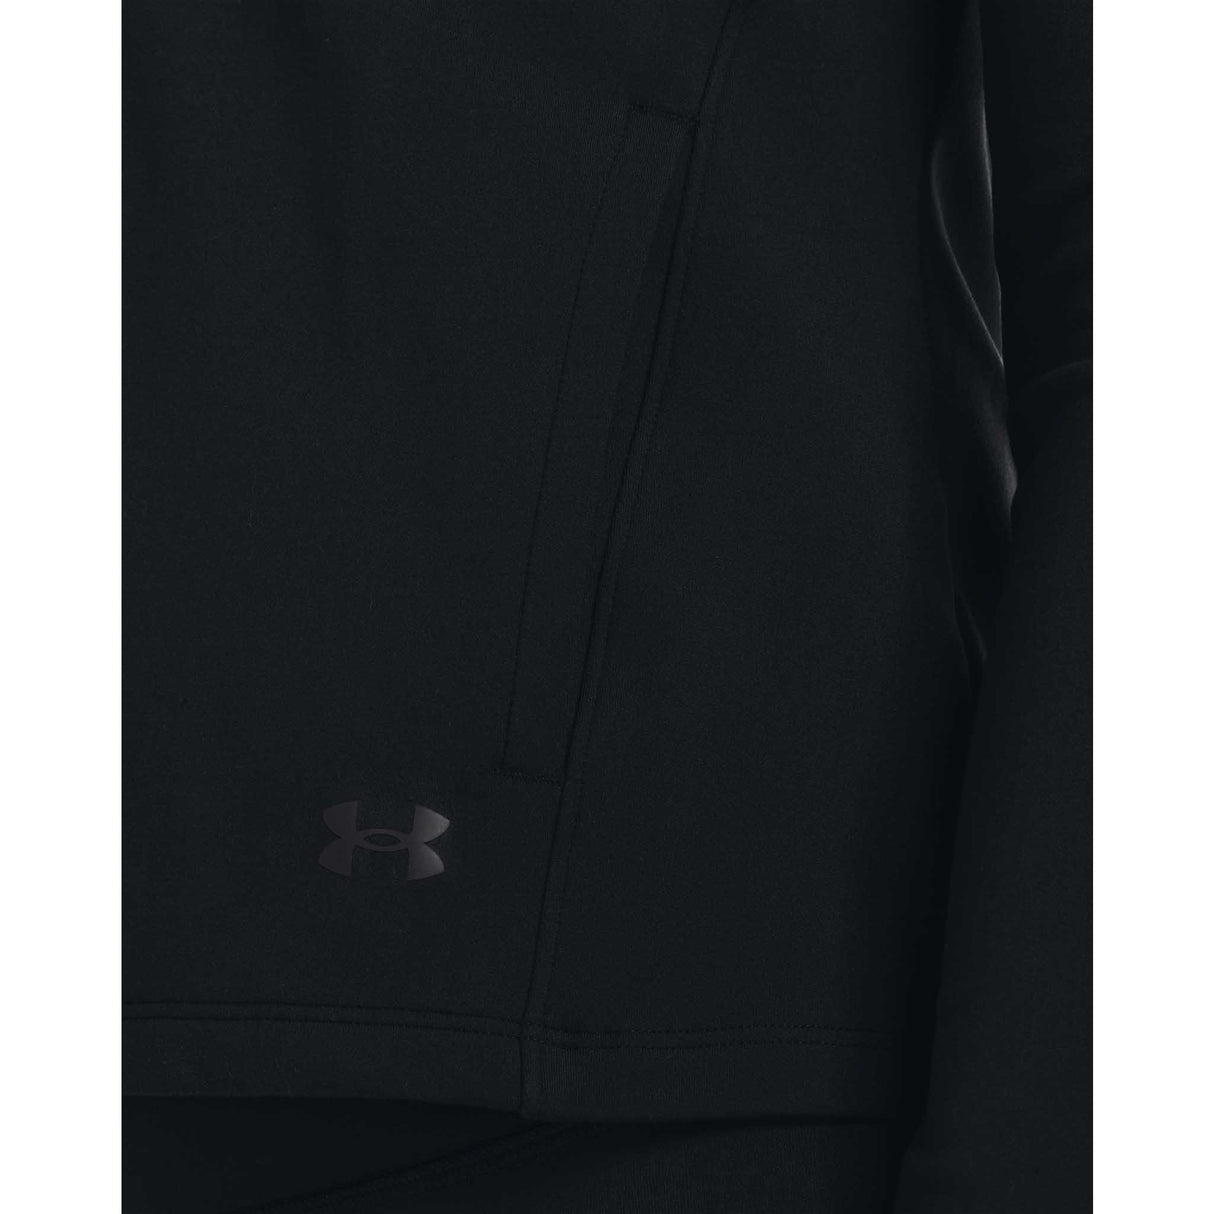 UA Motion veste à manches longues pour femme detail- noir / gris